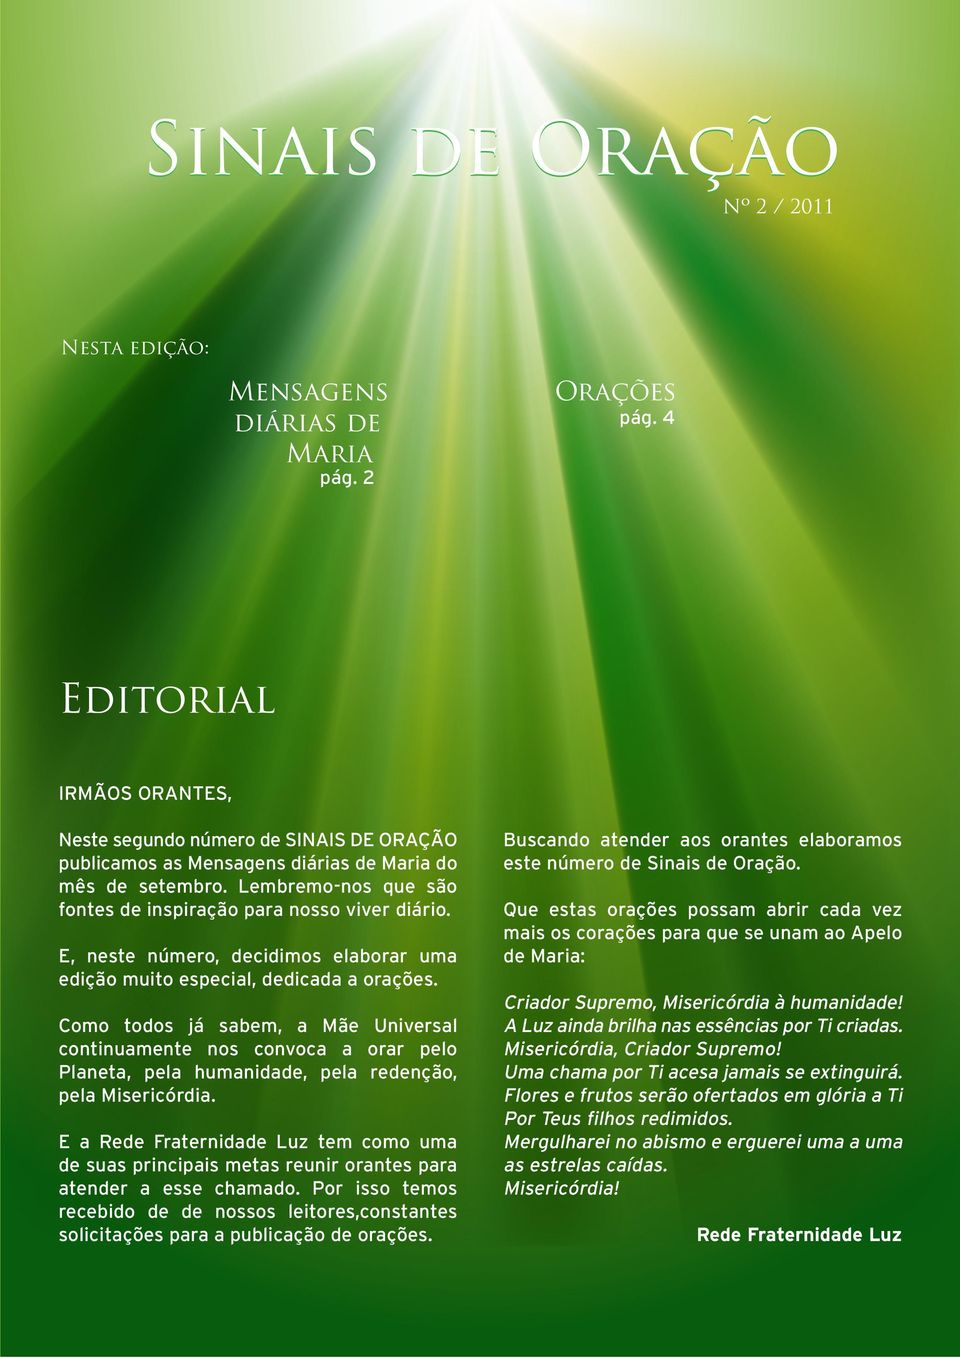 E, neste número, decidimos elaborar uma edição muito especial, dedicada a orações.